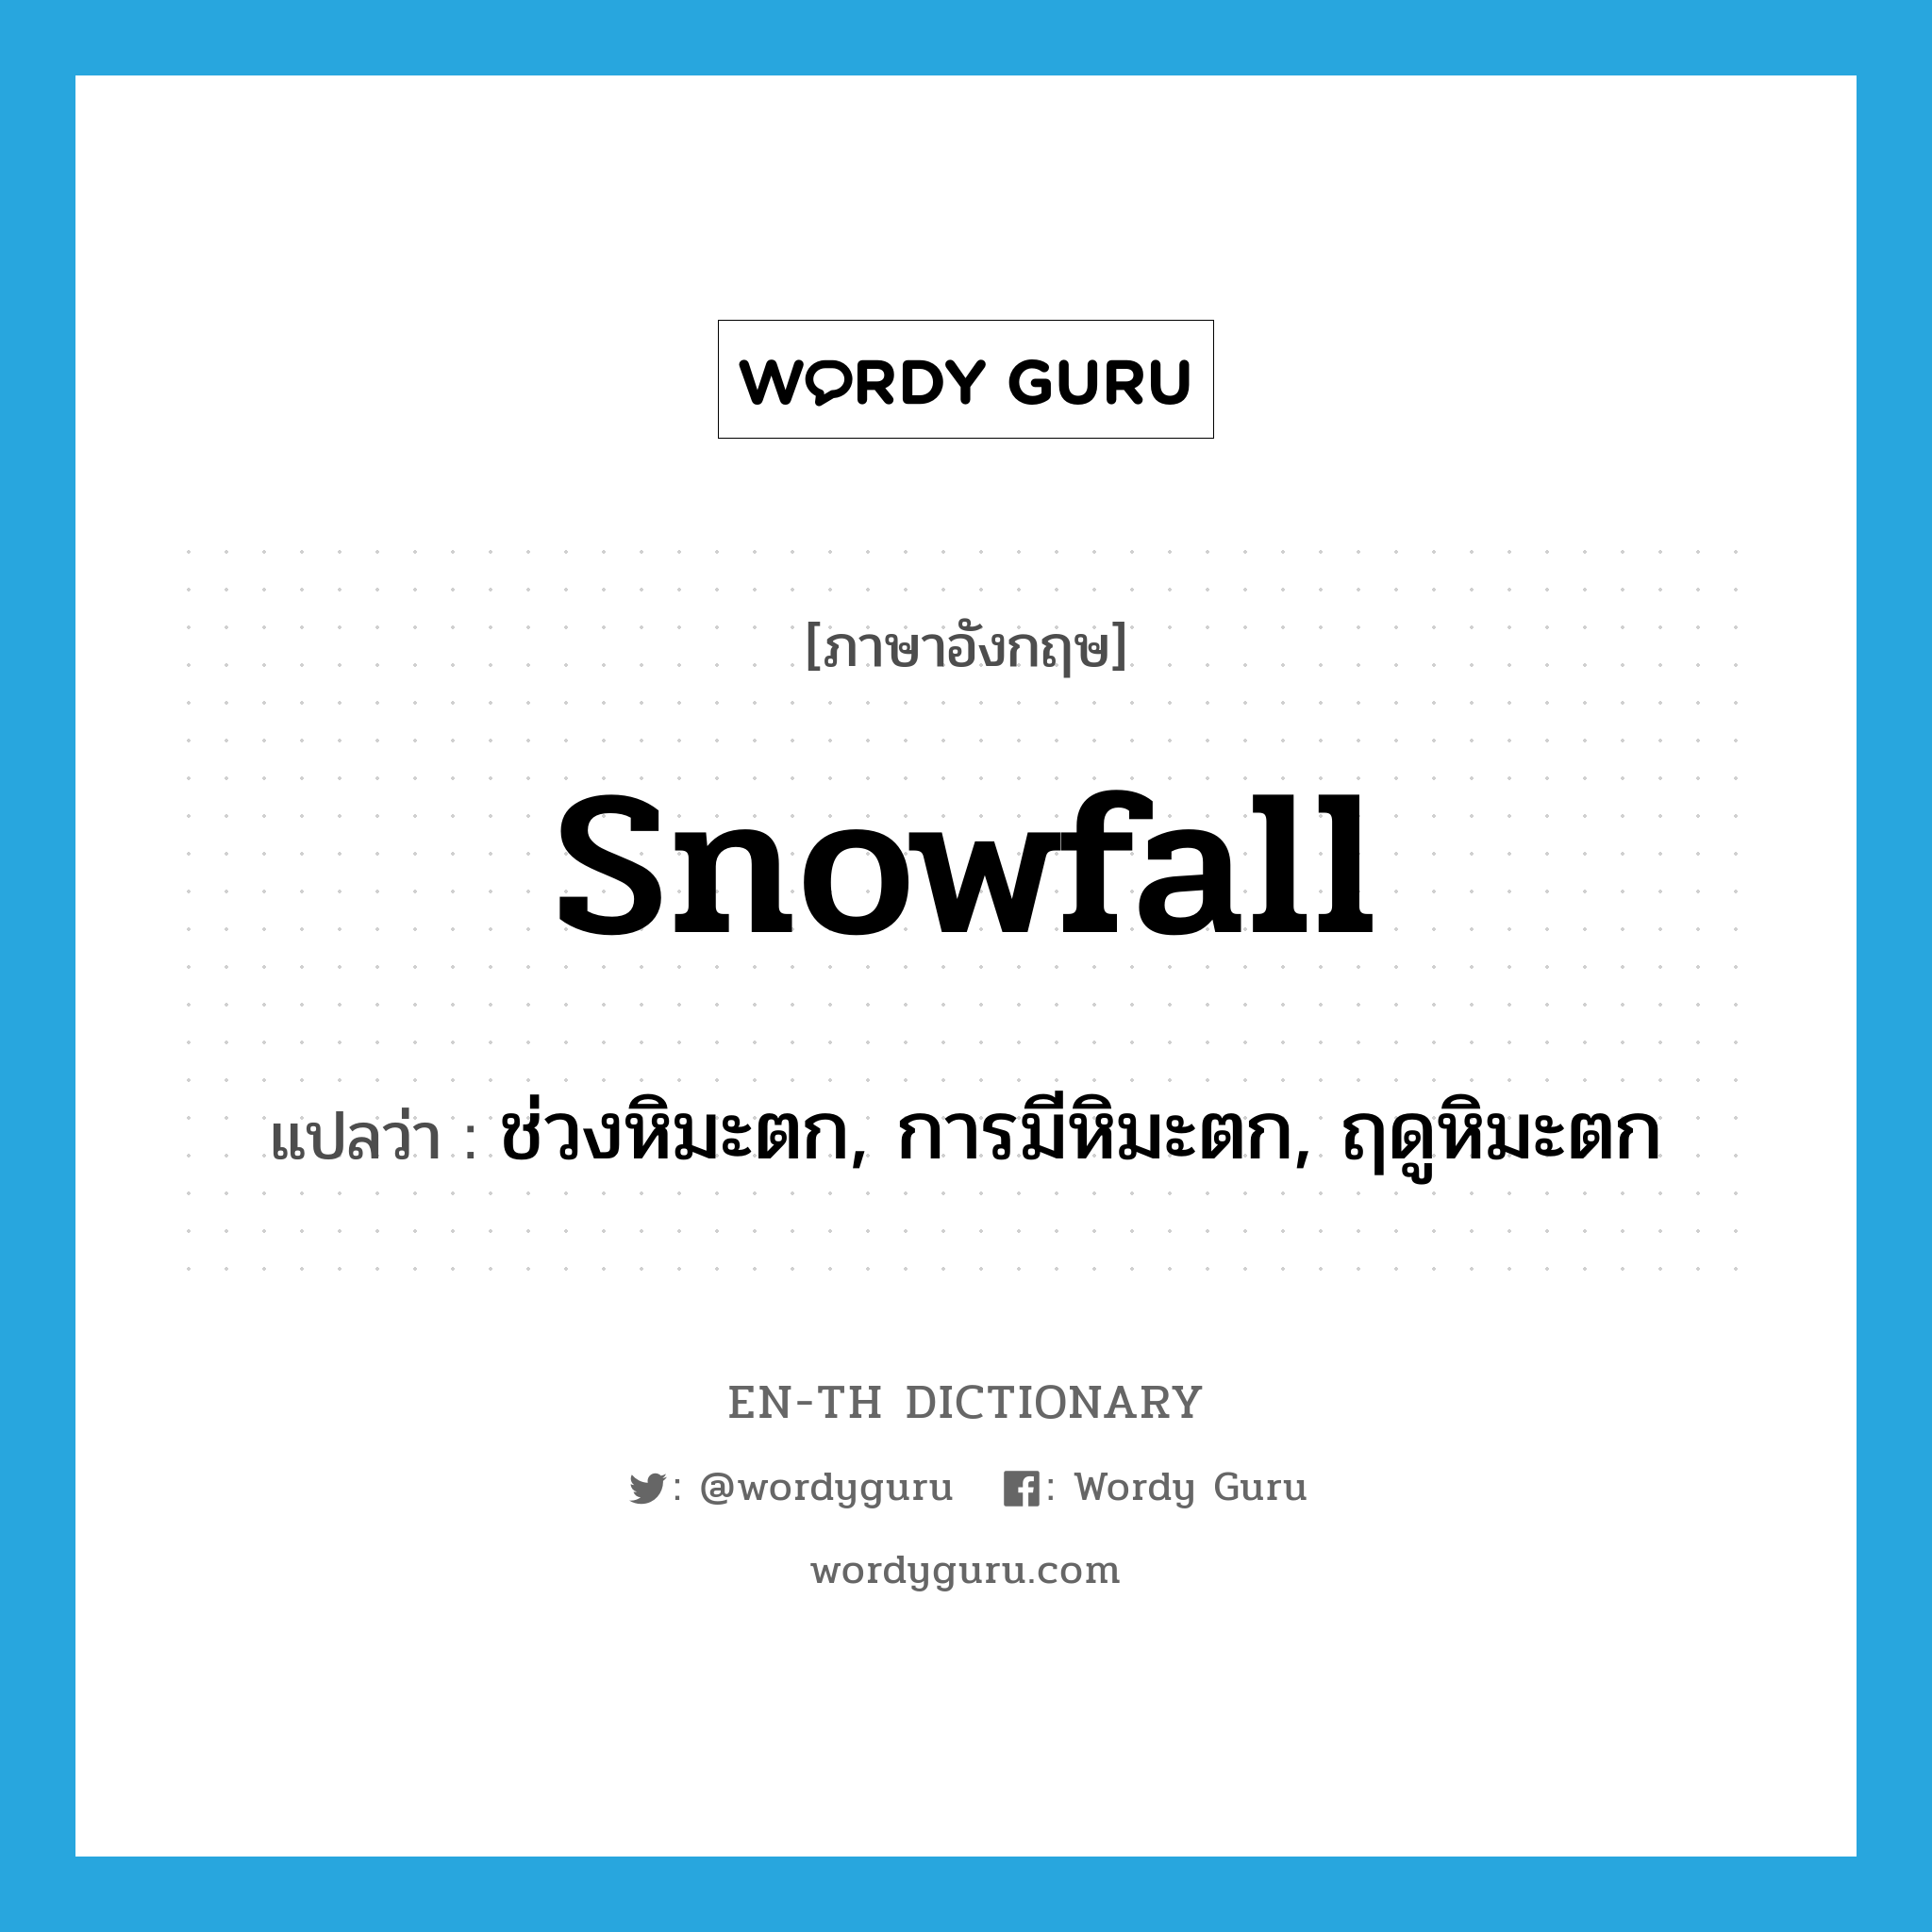 snowfall แปลว่า?, คำศัพท์ภาษาอังกฤษ snowfall แปลว่า ช่วงหิมะตก, การมีหิมะตก, ฤดูหิมะตก ประเภท N หมวด N